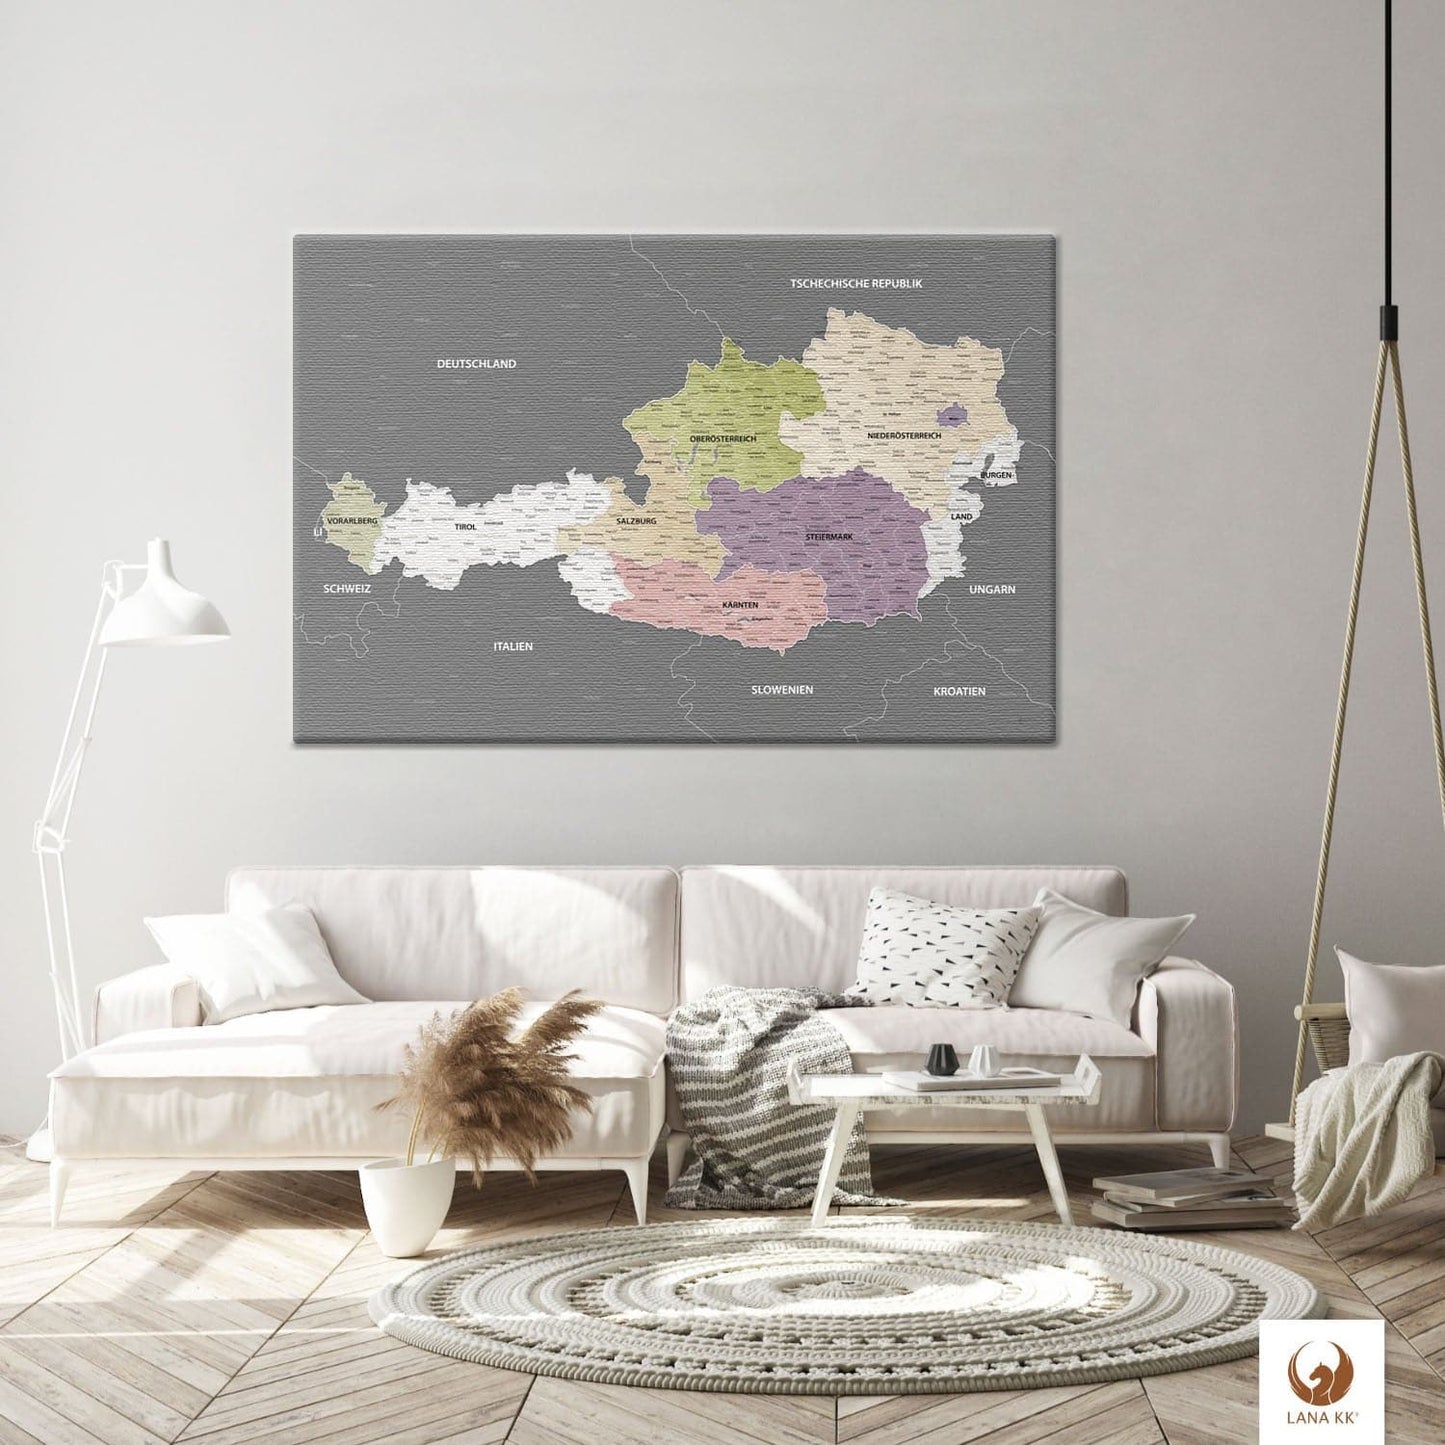 Die Welt als Zentrum Deiner Wohnung. Deine Österreichkarte Graphit Grau für sich mit ihren ausgewogenen Farben ideal in Dein Wohnkonzept ein.